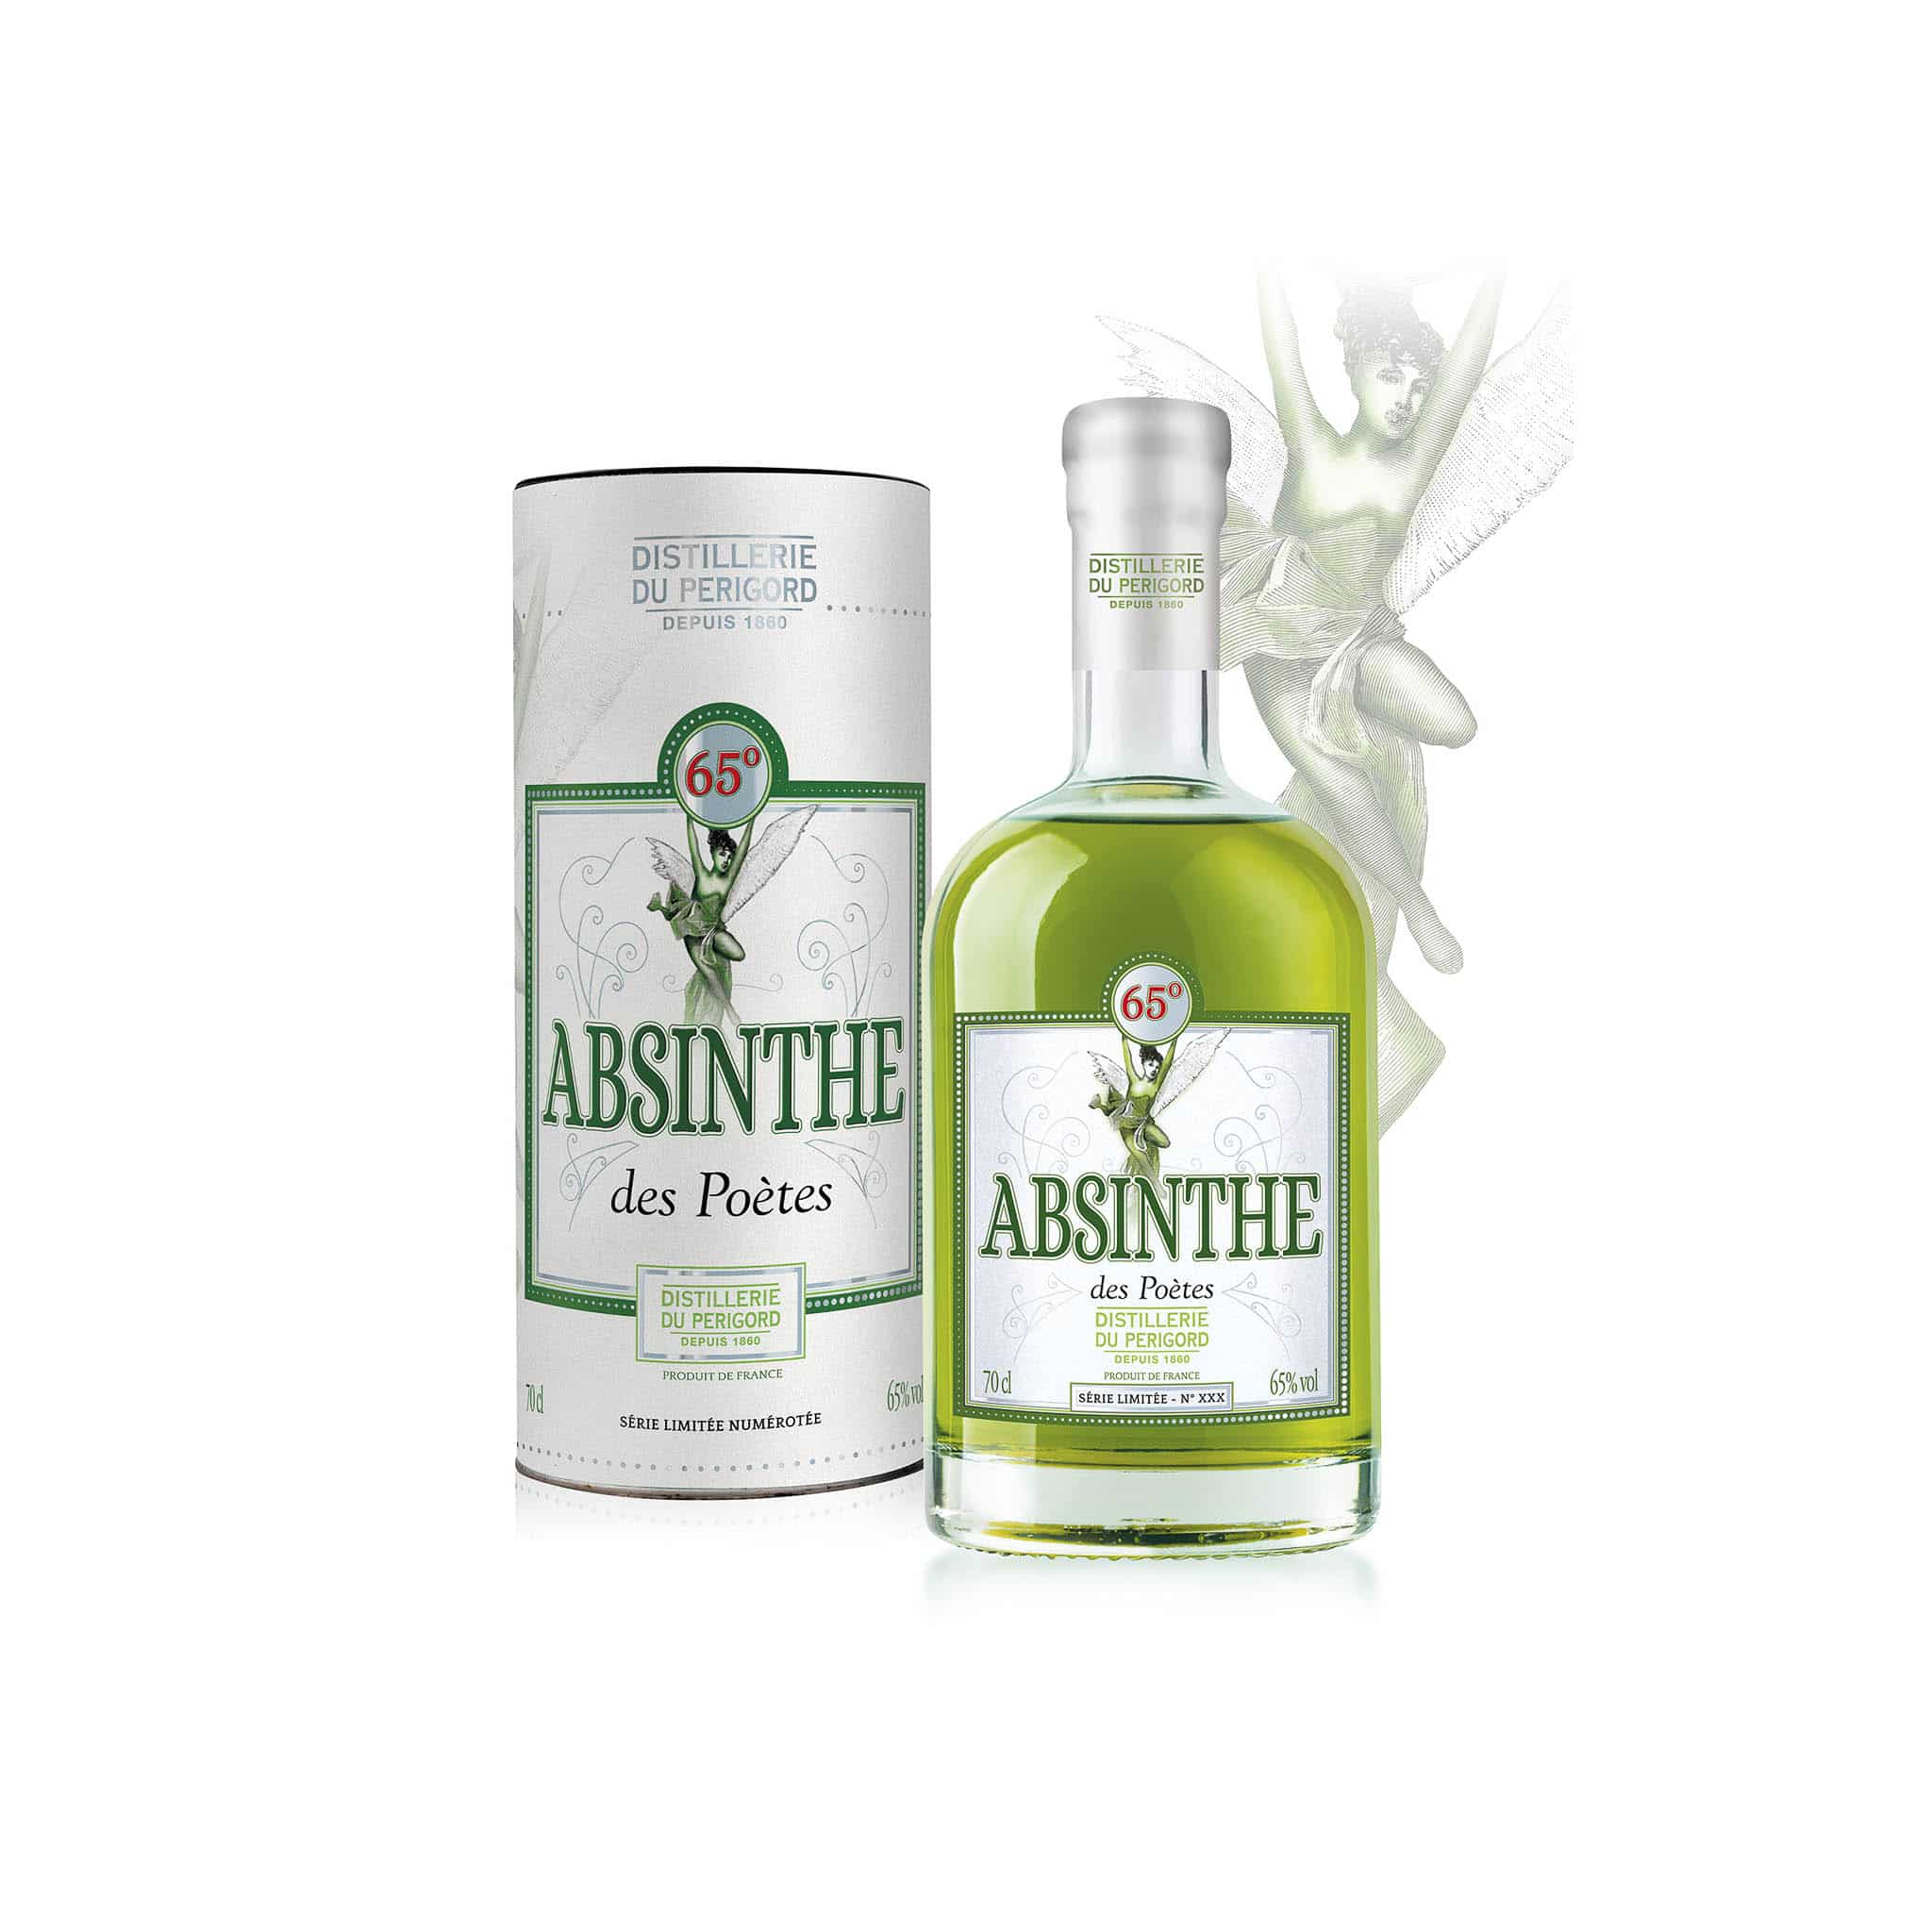 Distillerie du Perigord Absinthe des Poetes, 700ml